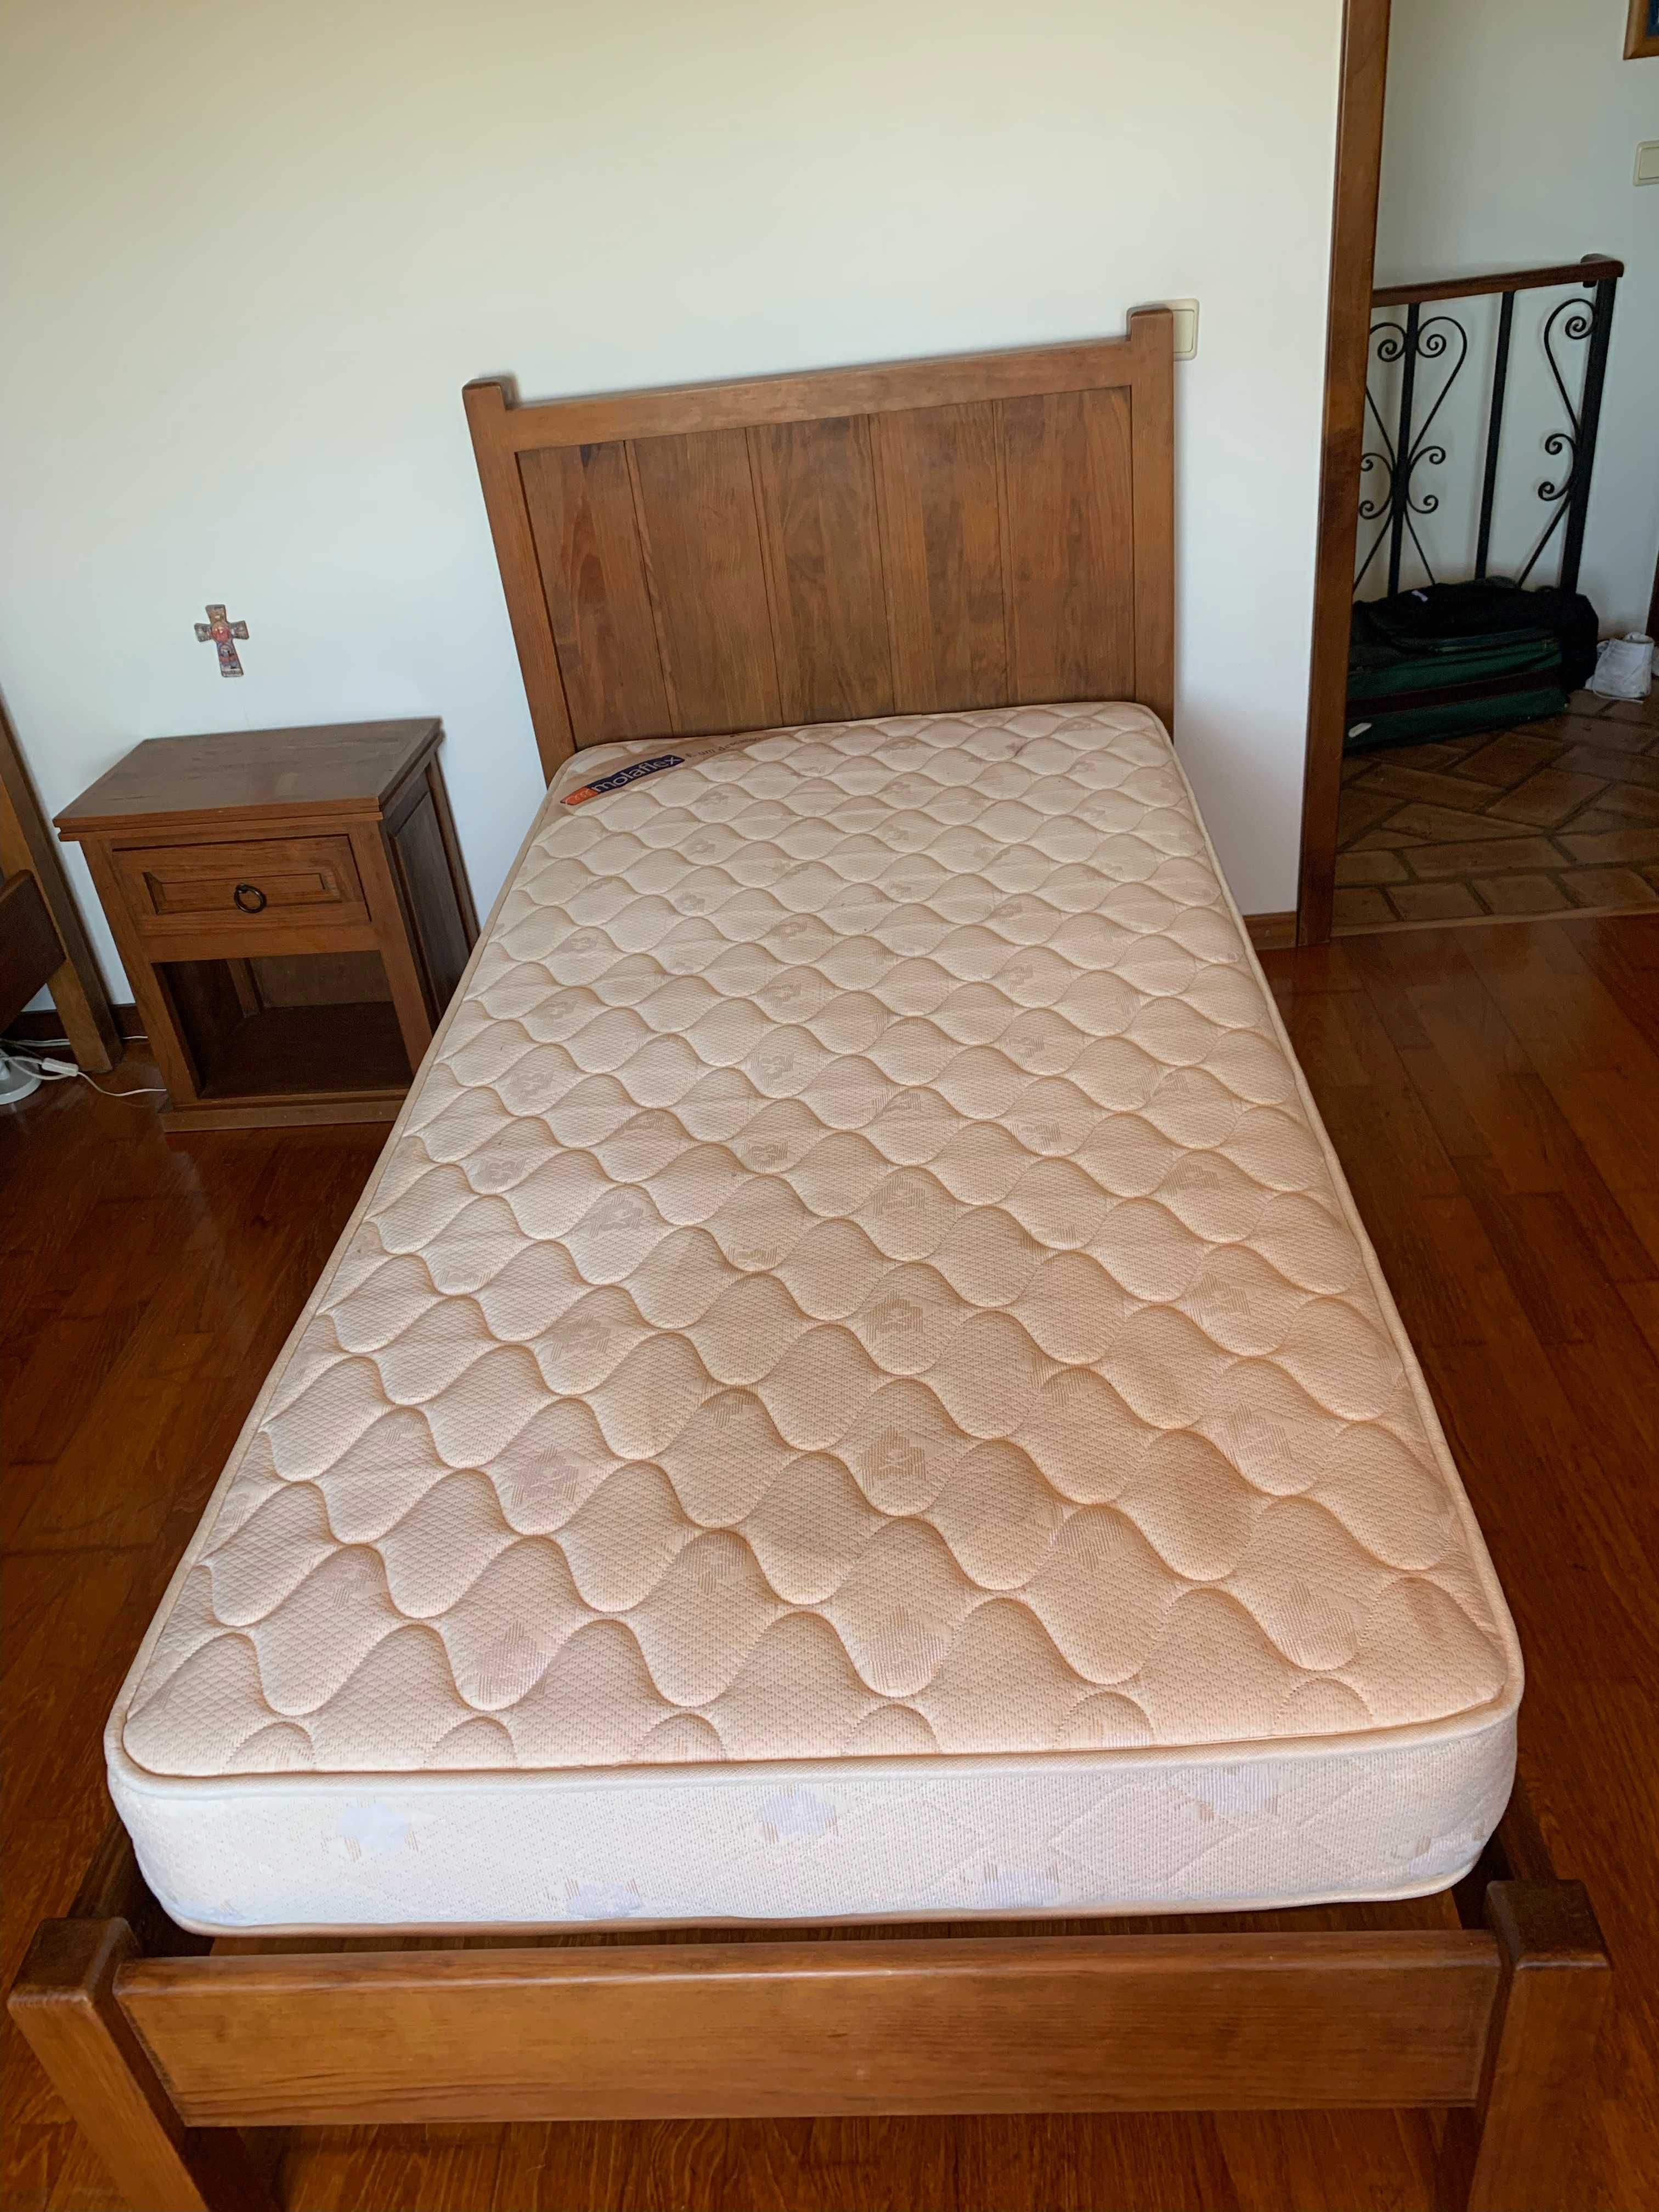 Duas camas com colchão e estrado (90x200)